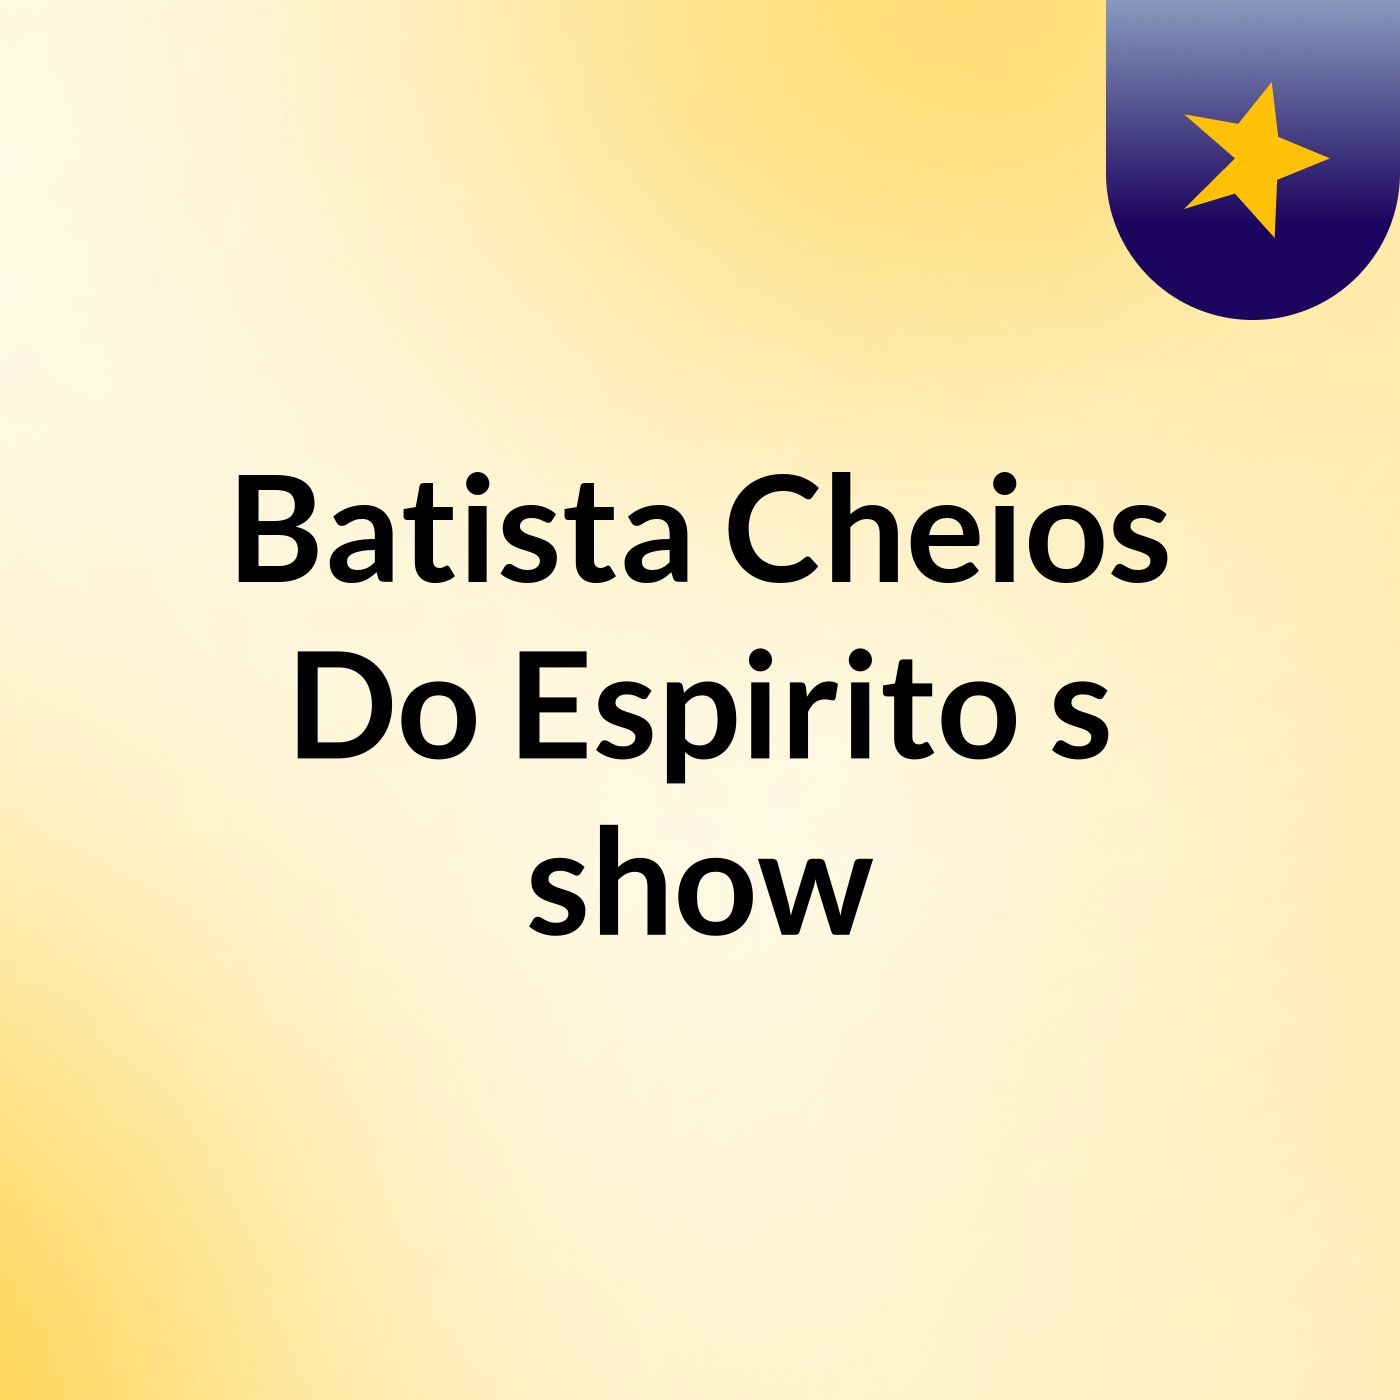 Batista Cheios Do Espirito's show